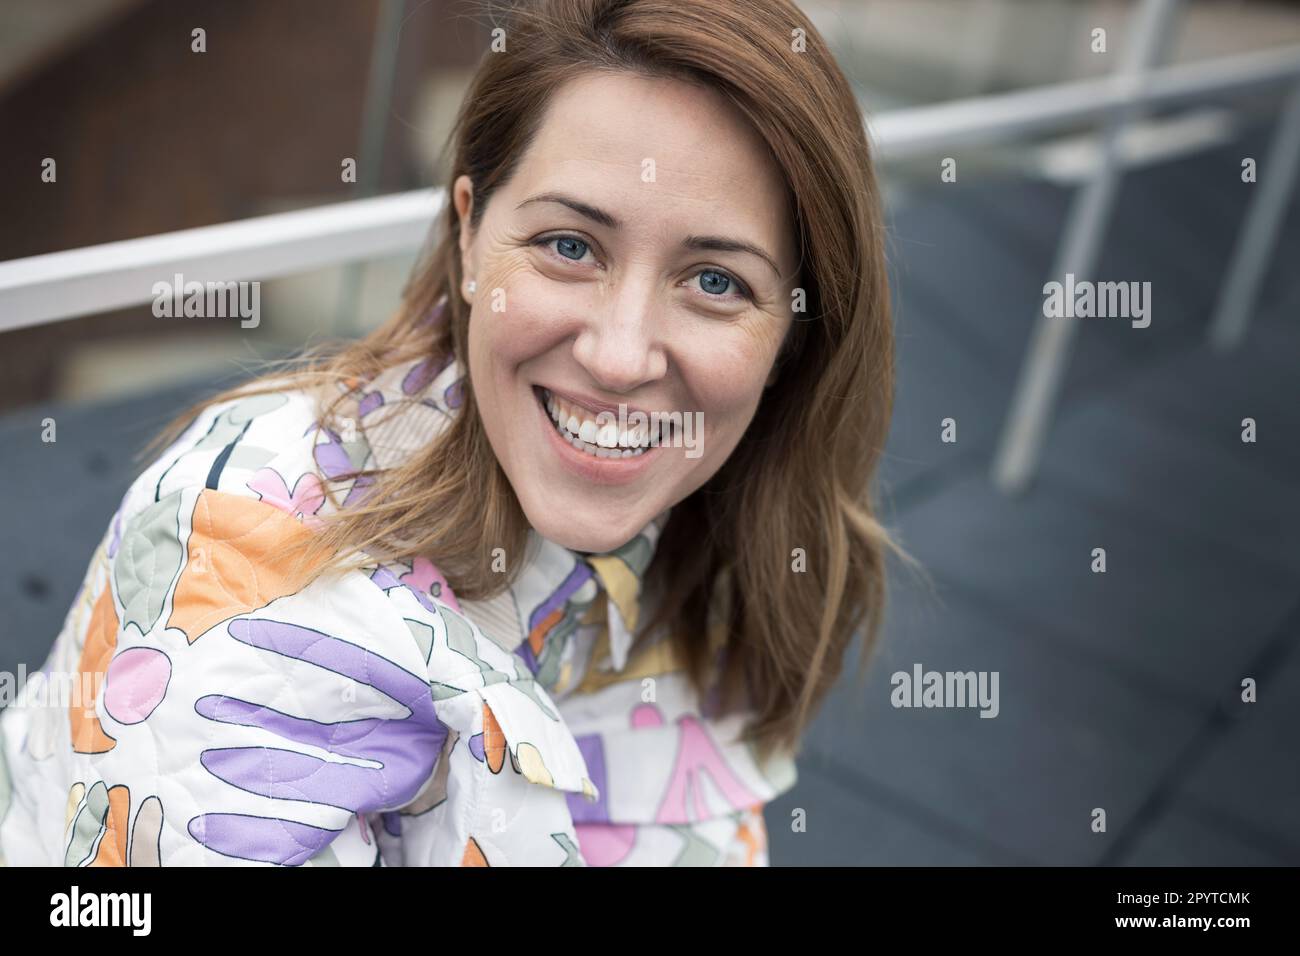 Portrait de la femme heureuse et souriante. Banque D'Images